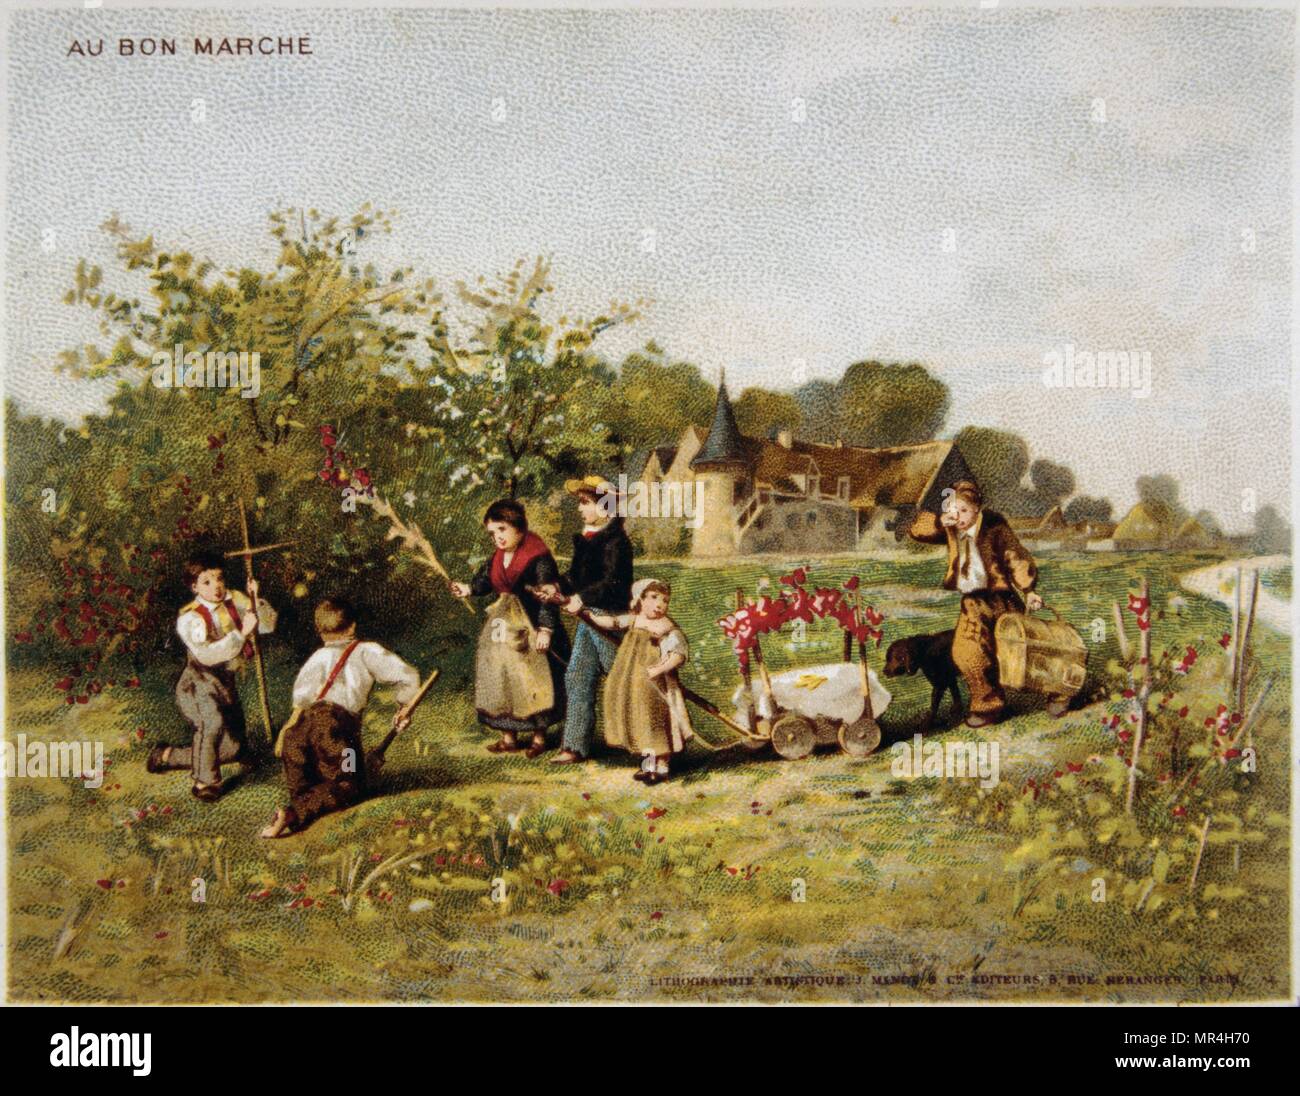 Chromolithographie représentant des enfants français dans une ferme des branches de collecte de feuilles et de fleurs 1870 Banque D'Images